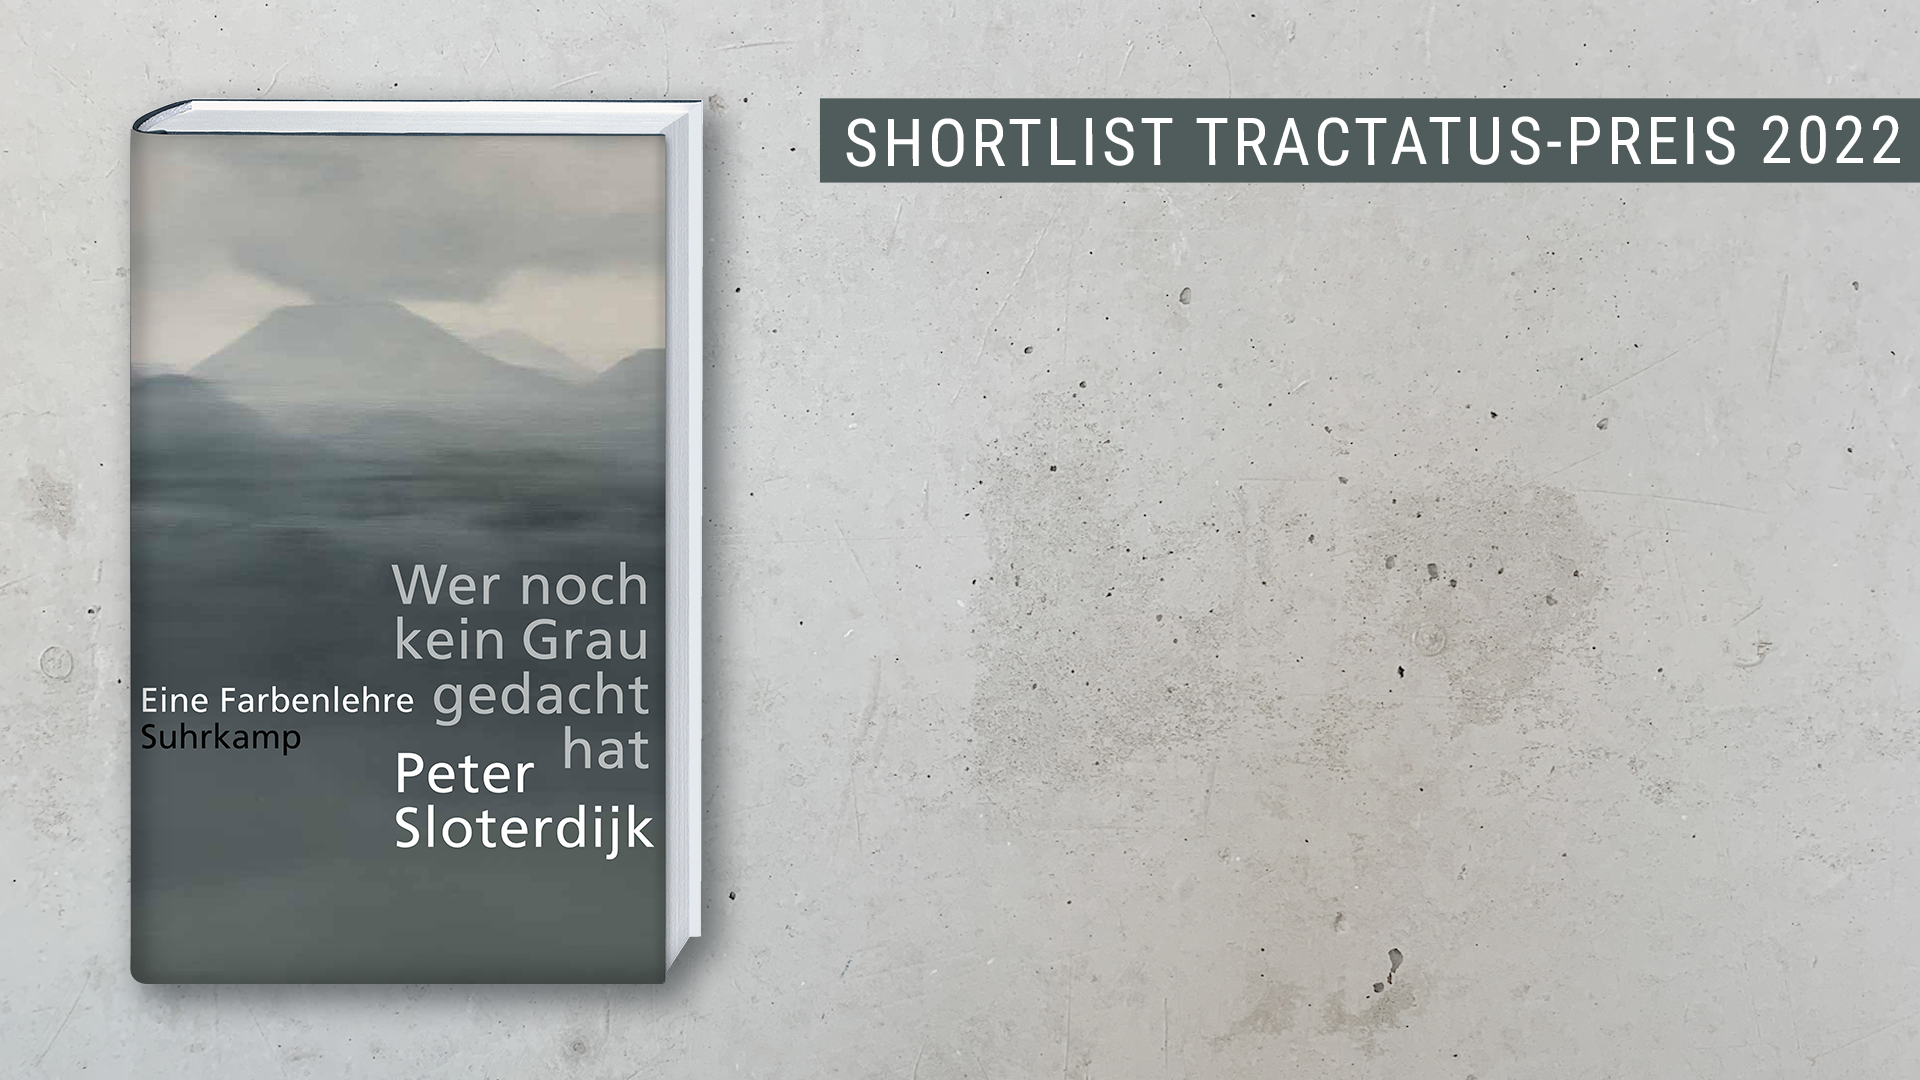 Beitrag zu Peter Sloterdijk auf der Shortlist für den Tractatus-Preis 2022